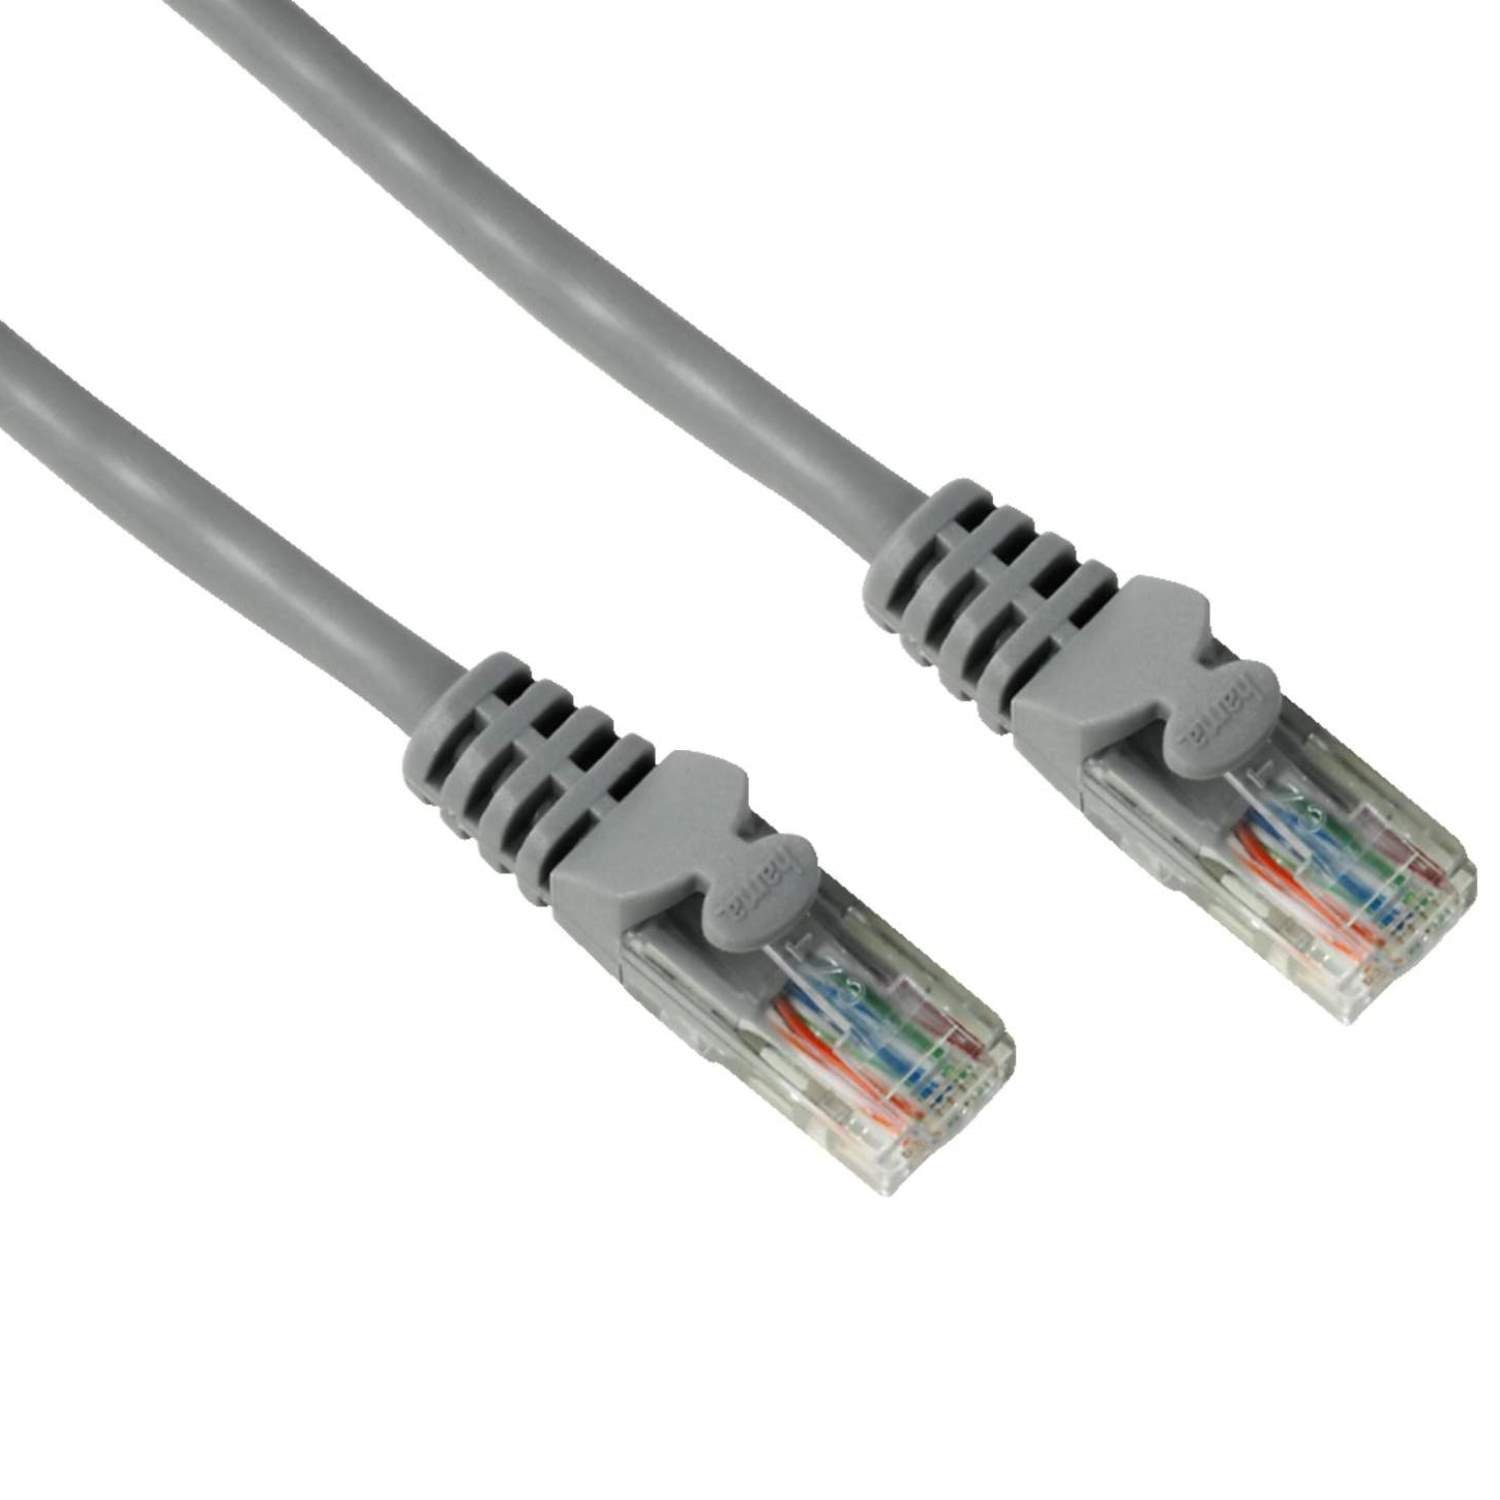 Hama 10m Netzwerk-Kabel Cat5e UTP Lan-Kabel Grau LAN-Kabel, RJ45, Kein (1000 cm), Patch-Kabel Cat 5e Gigabit Ethernet